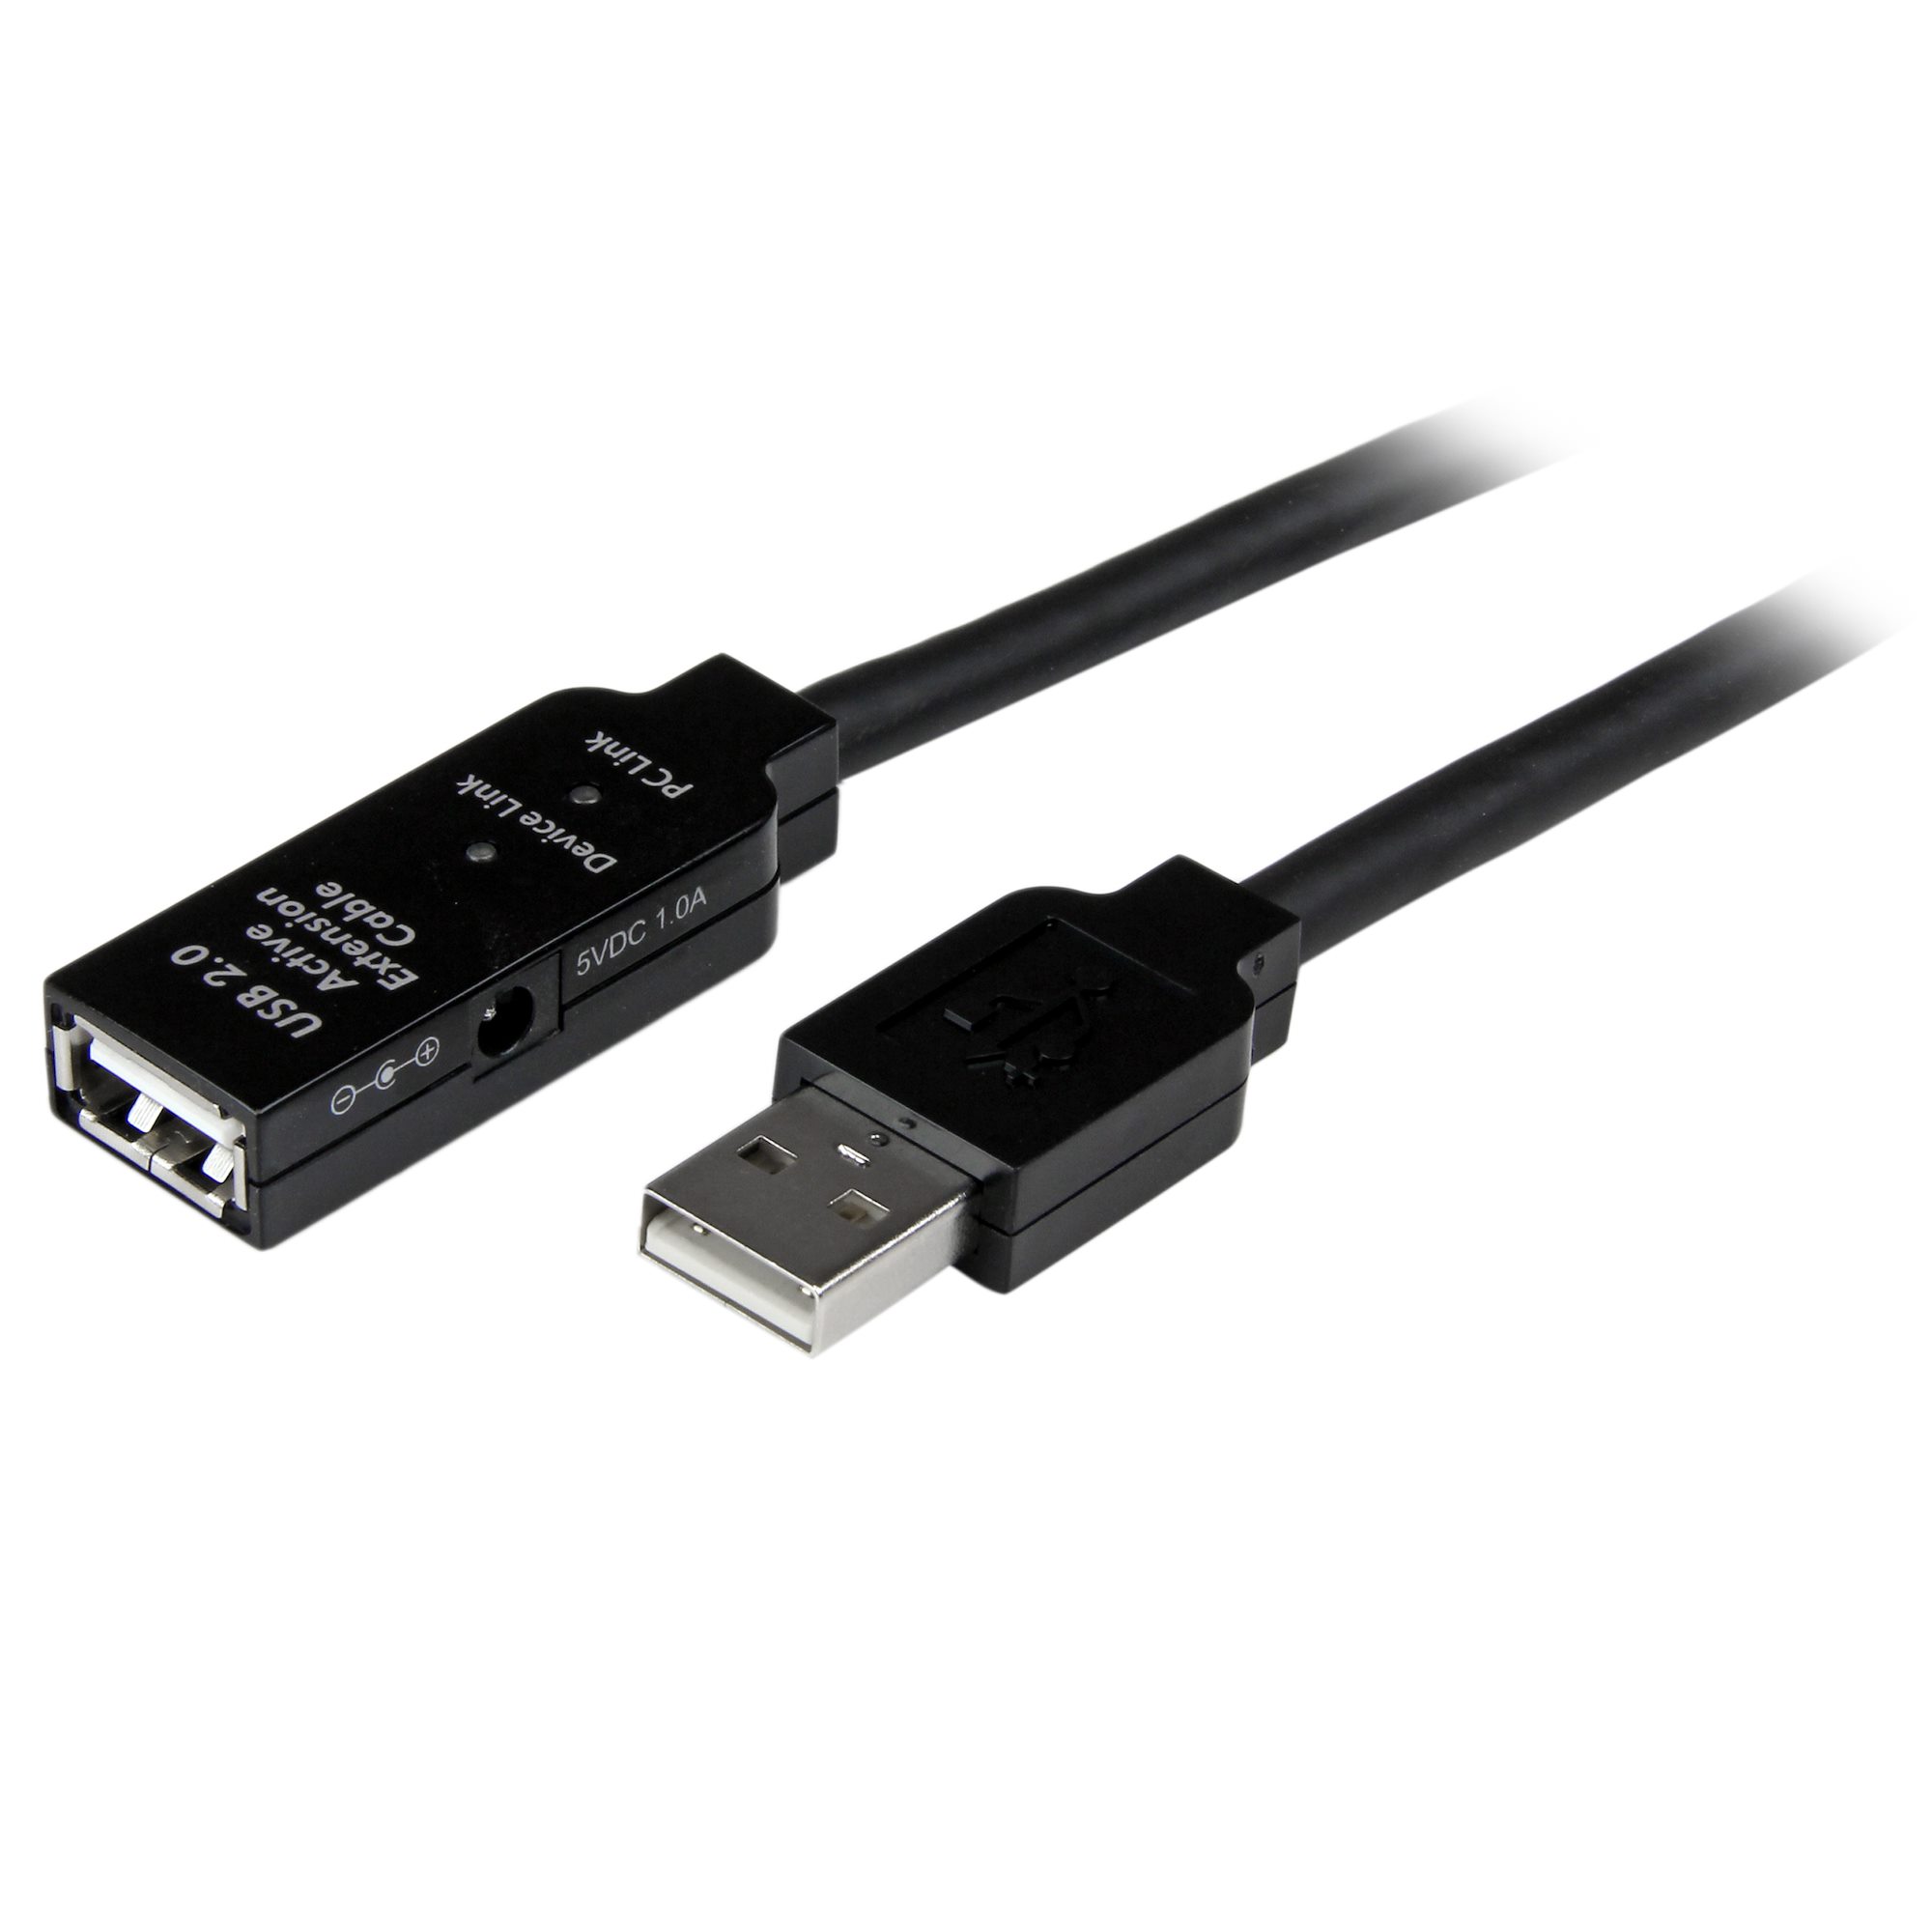 10m USB Kabel Digitus Verlängerung aktiv mit Stecker und Buchse für D200 